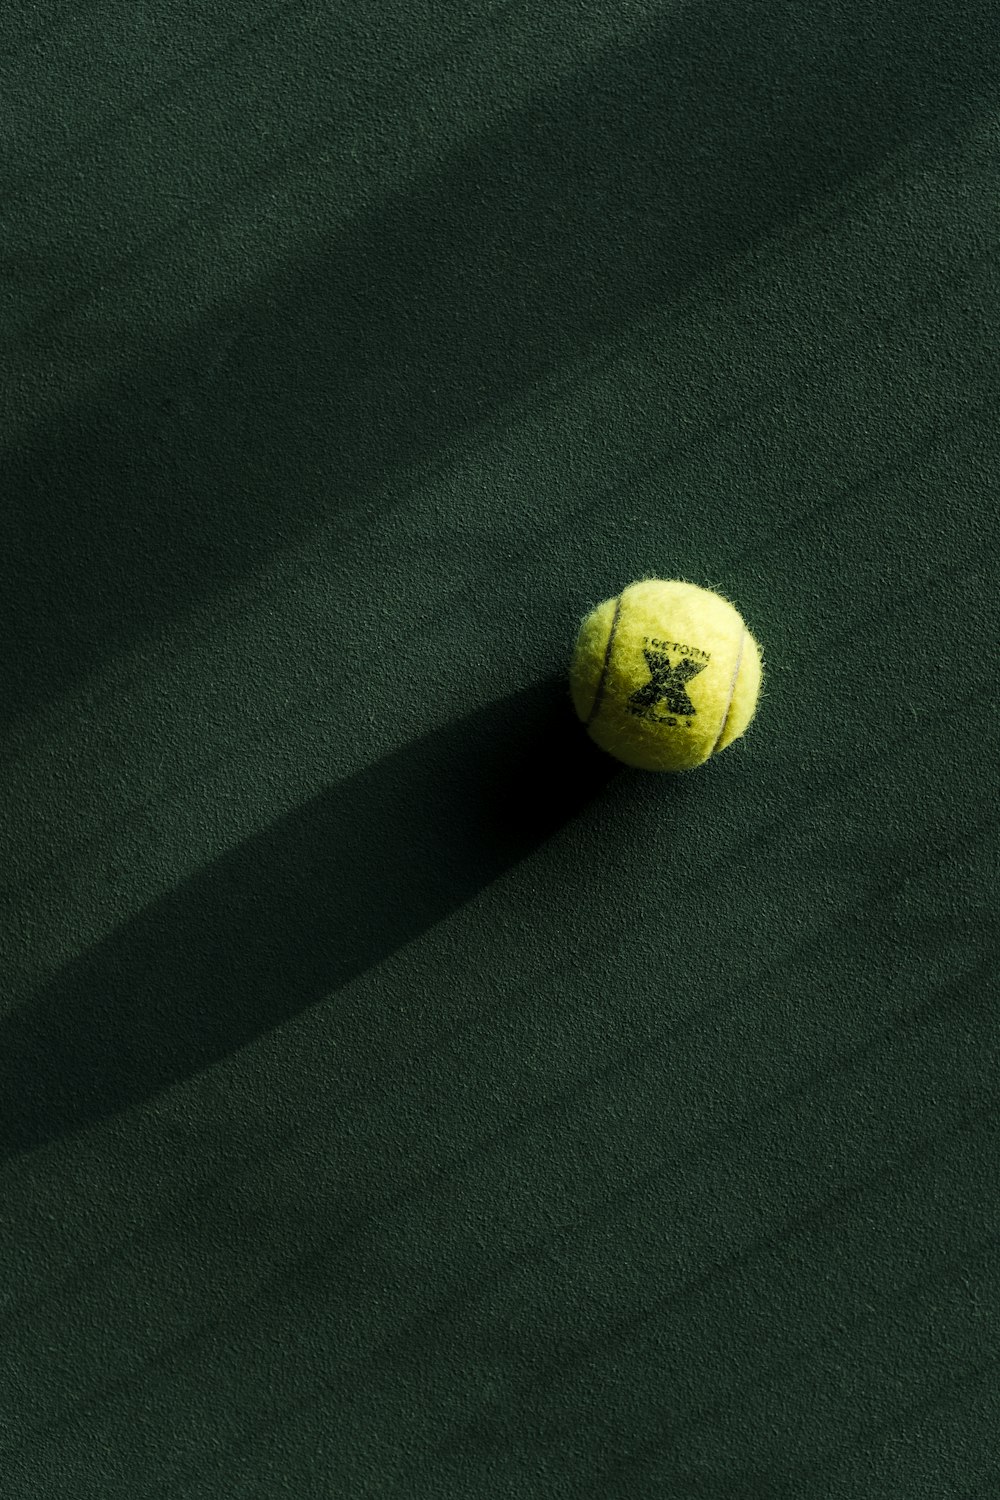 Une balle de tennis sur un court vert avec une ombre